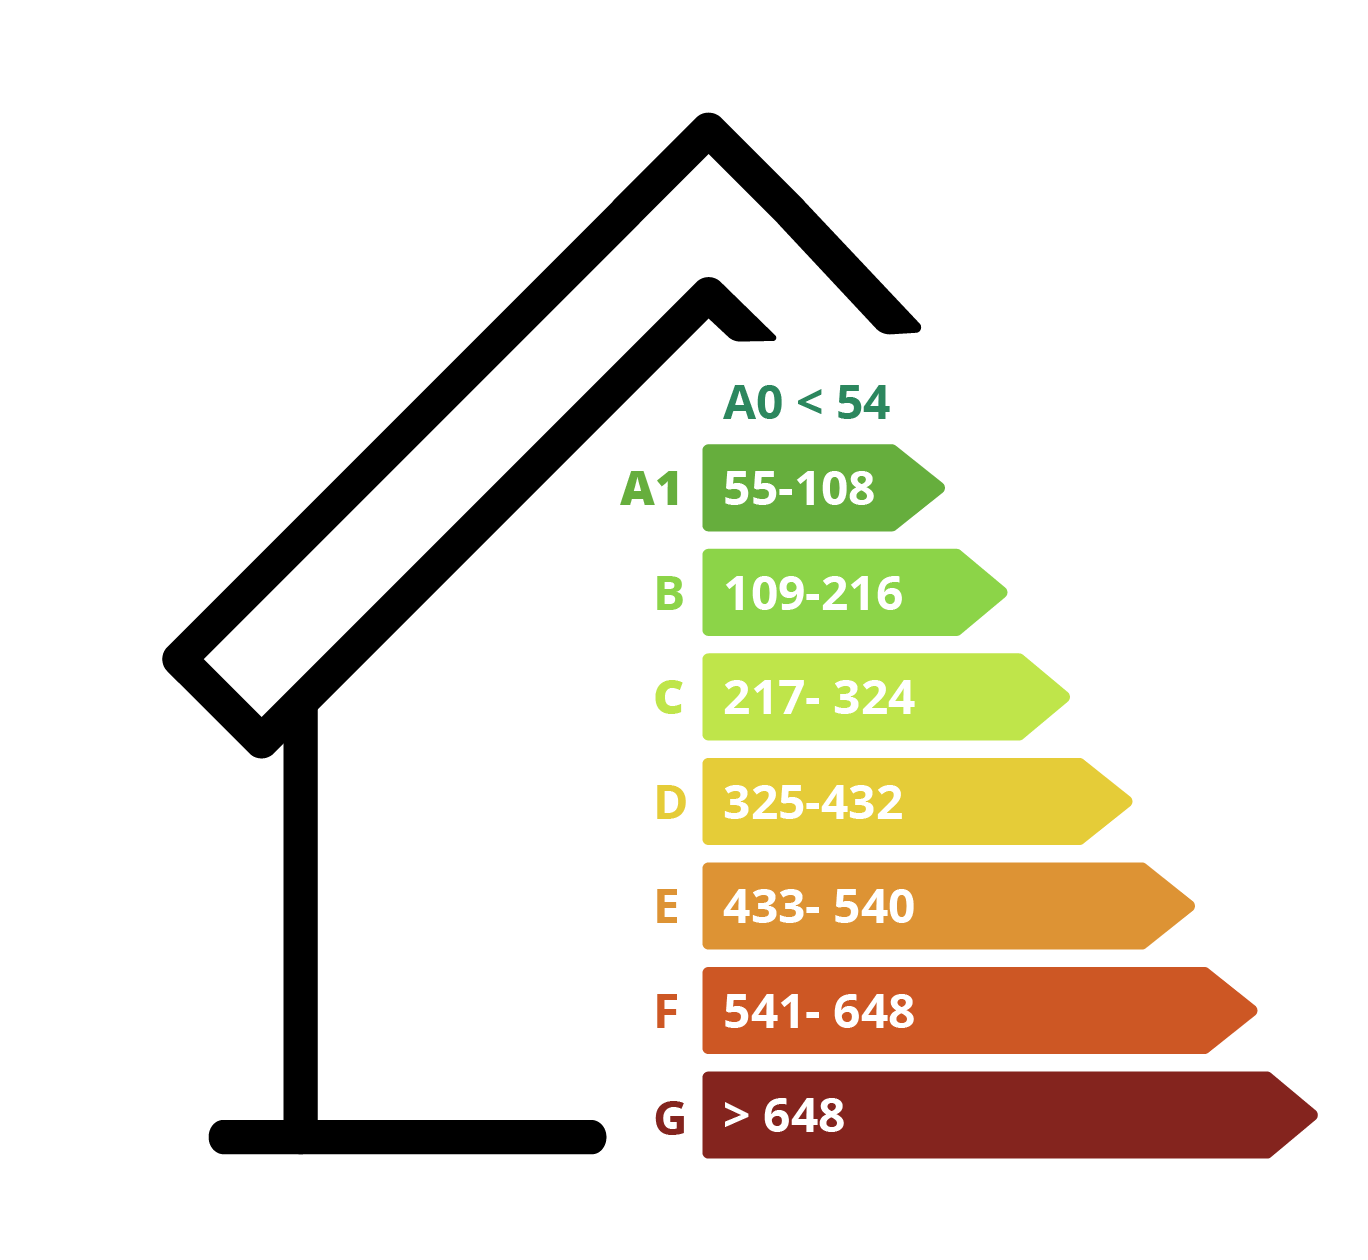 Energetické triedy spotrebičov od A do G, pričom A predstavuje najvyššiu účinnosť a G najnižšiu.